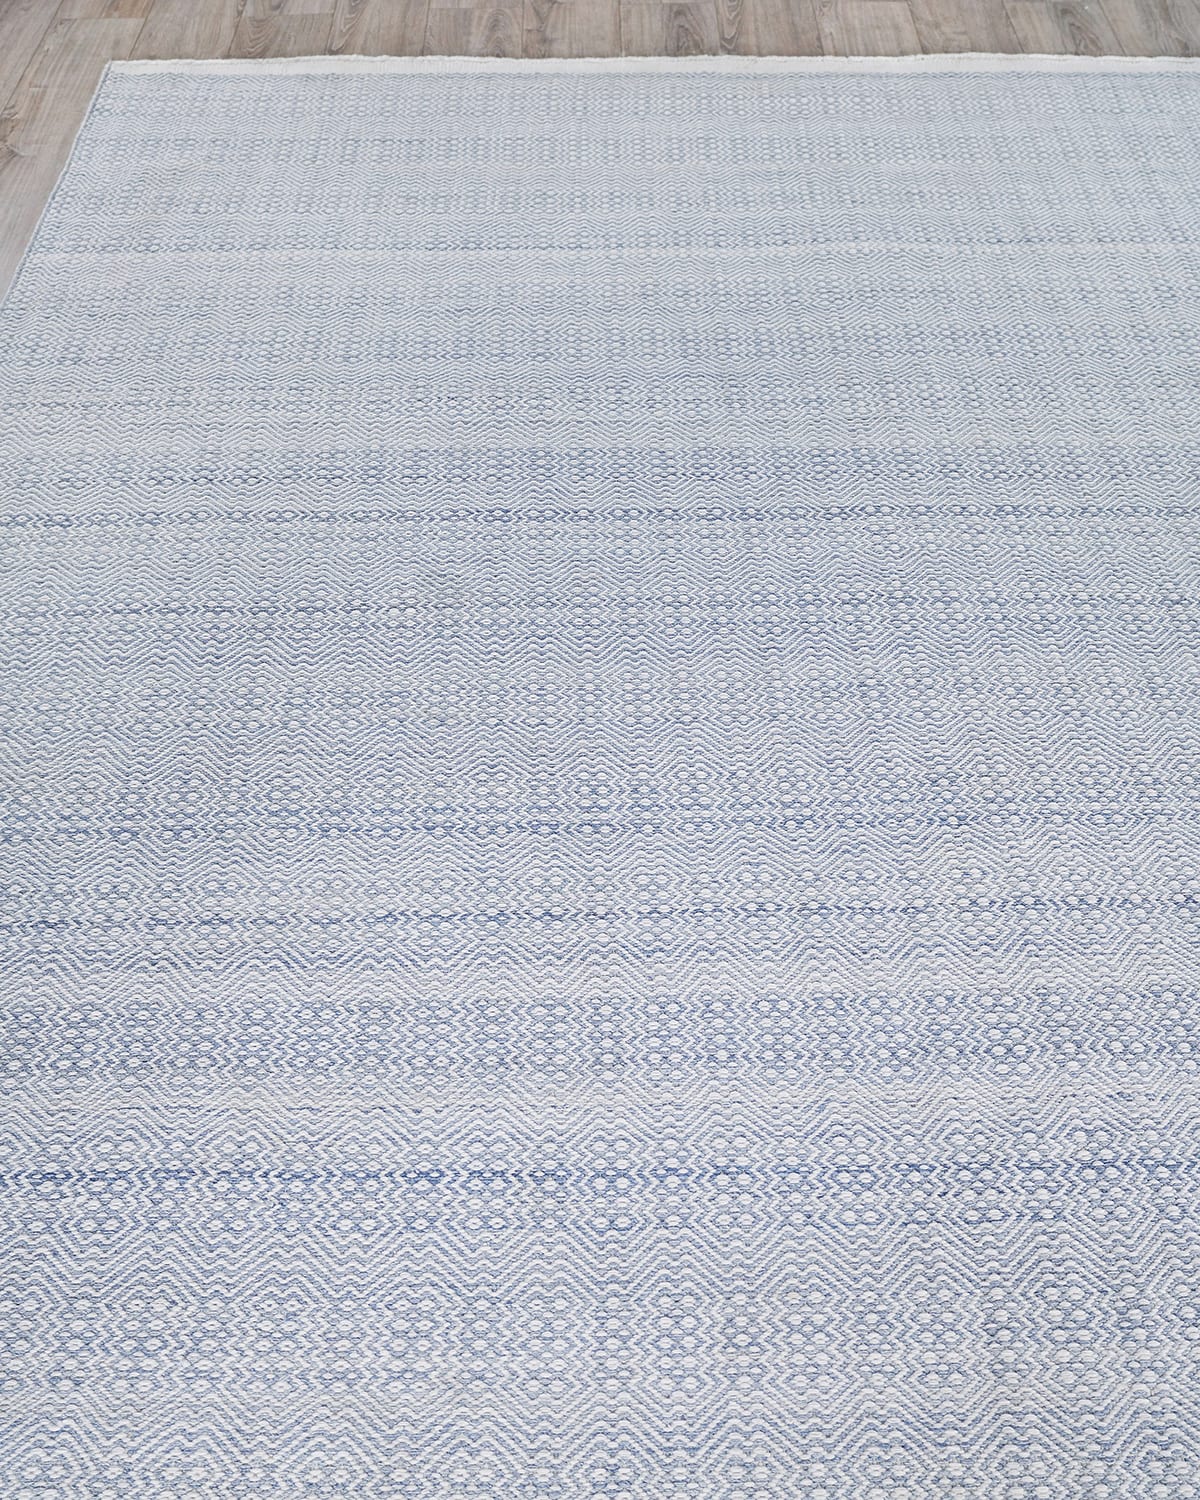 Exquisite Rugs Naomi Indoor/outdoor Flat-weave Rug, 10' X 14'